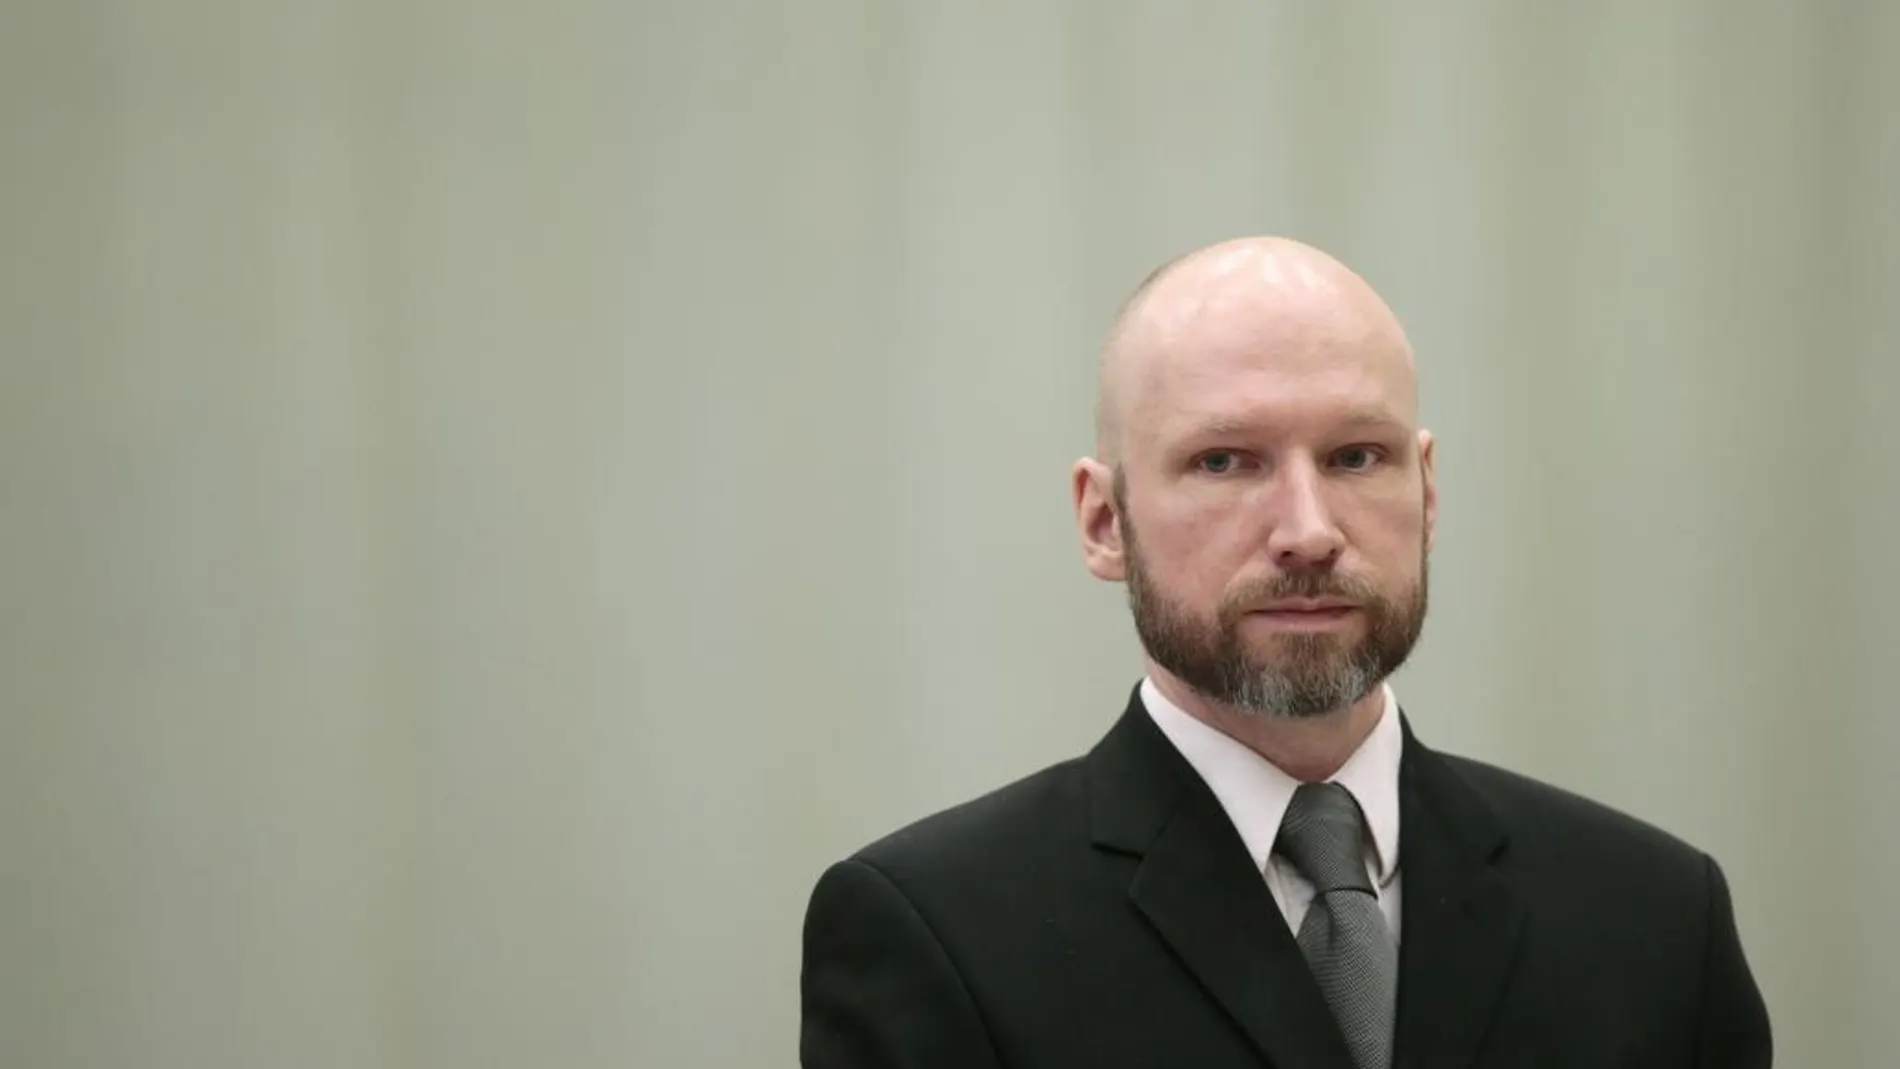 Fotografía de archivo fechada el 18 de enero de 2017 que muestra al ultraderechista Anders Behring Breivik